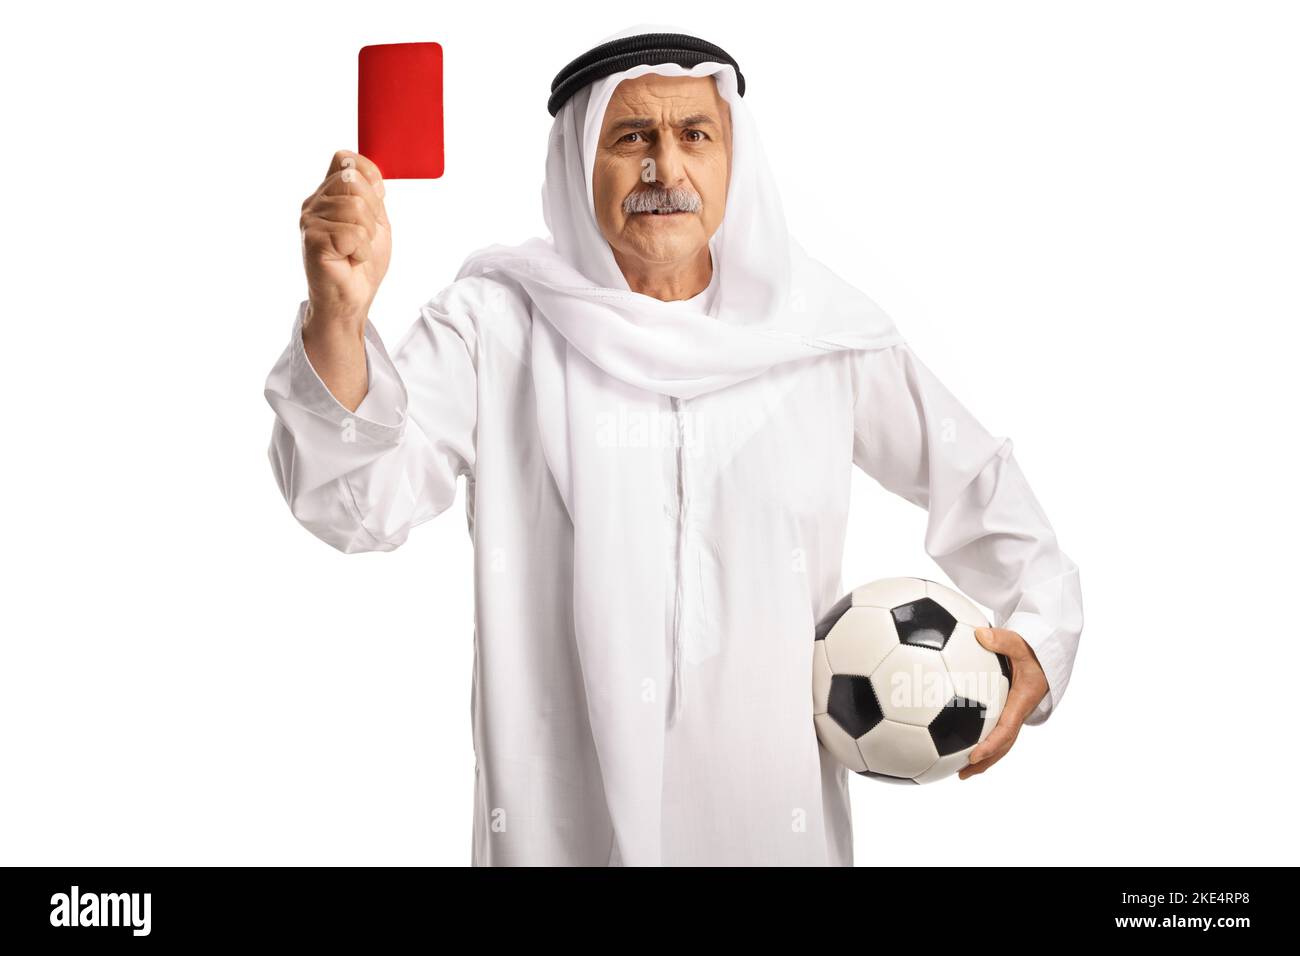 Argry aab uomo in abiti etnici in possesso di un calcio e mostrando un cartellino rosso isolato su sfondo bianco Foto Stock